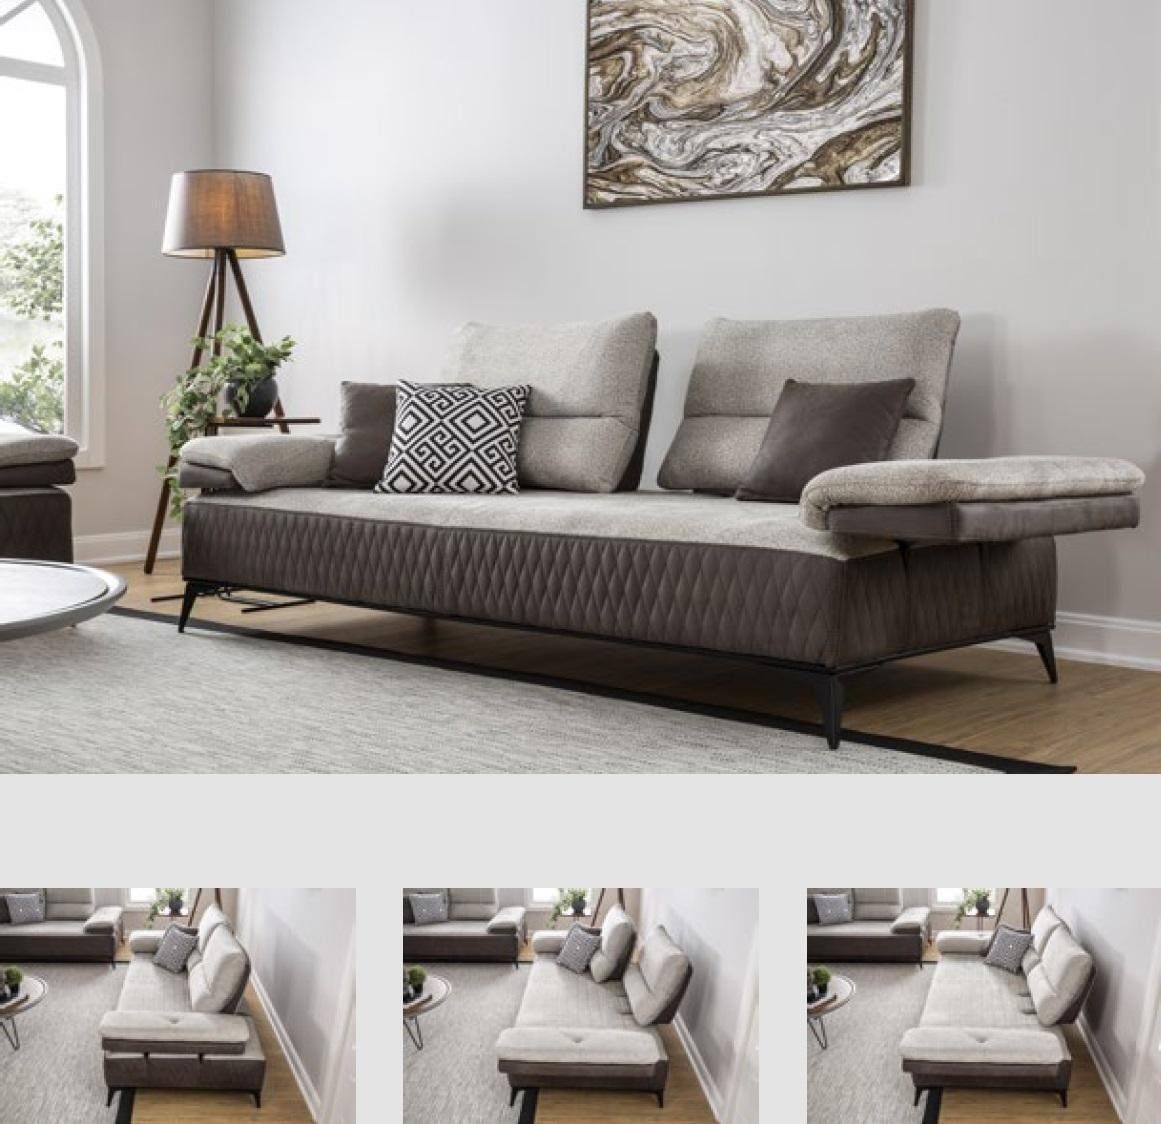 JVmoebel 3-Sitzer Couch Grau Stoff Möbel Couchen Moderne Sofas Dreisitzer Klassische